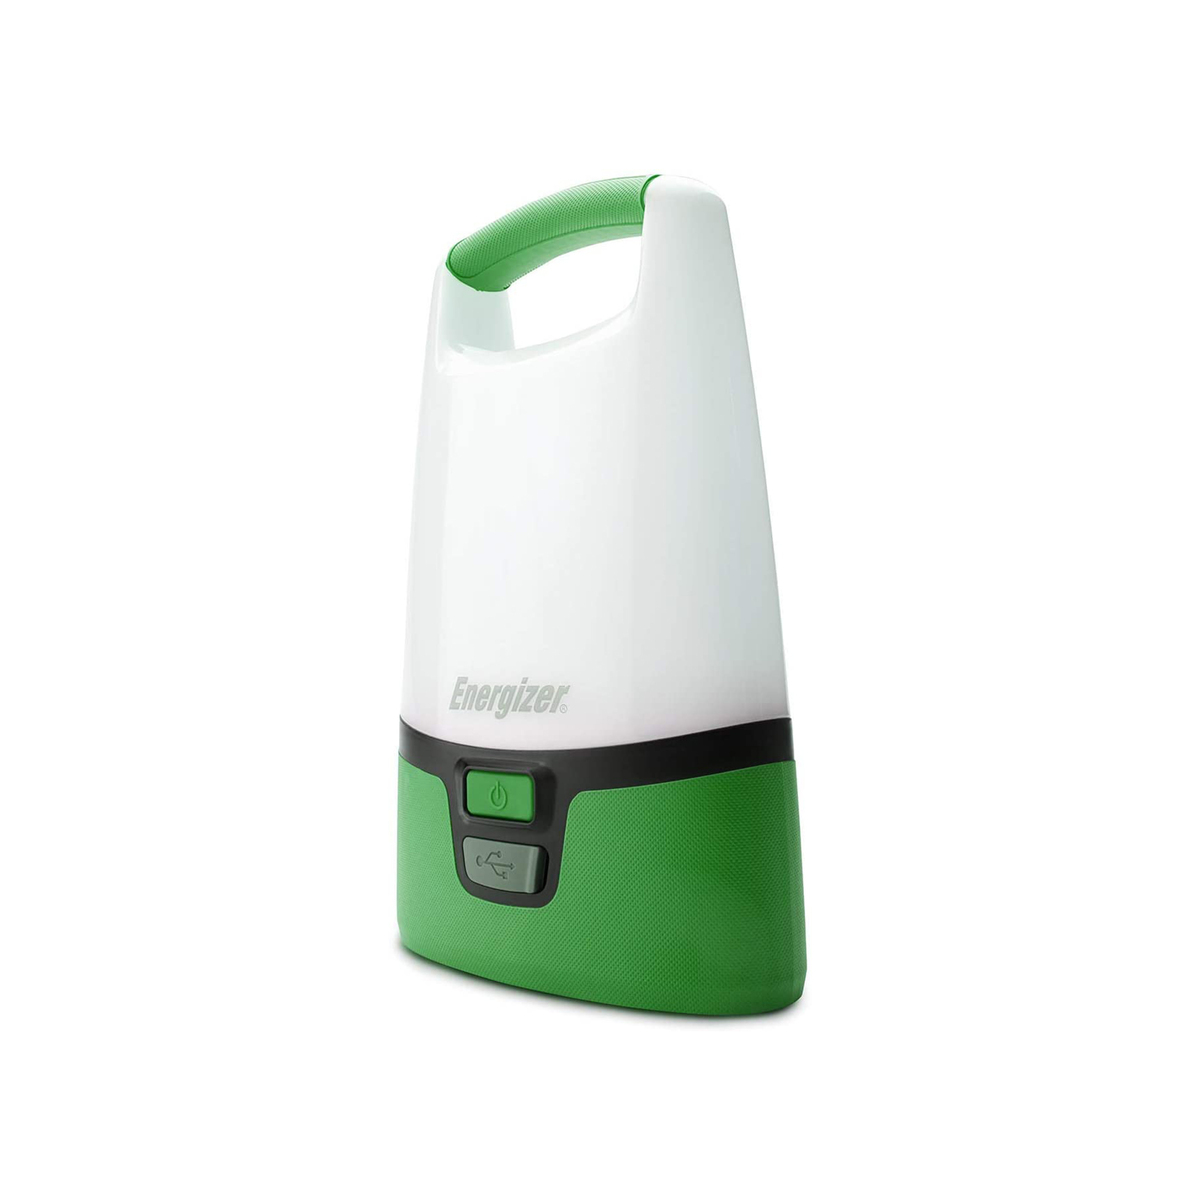 اشتري قم بشراء Energizer Recharge LED Lantern Torch ALURL7 Online at Best Price من الموقع - من لولو هايبر ماركت Emergency Lamps في الكويت